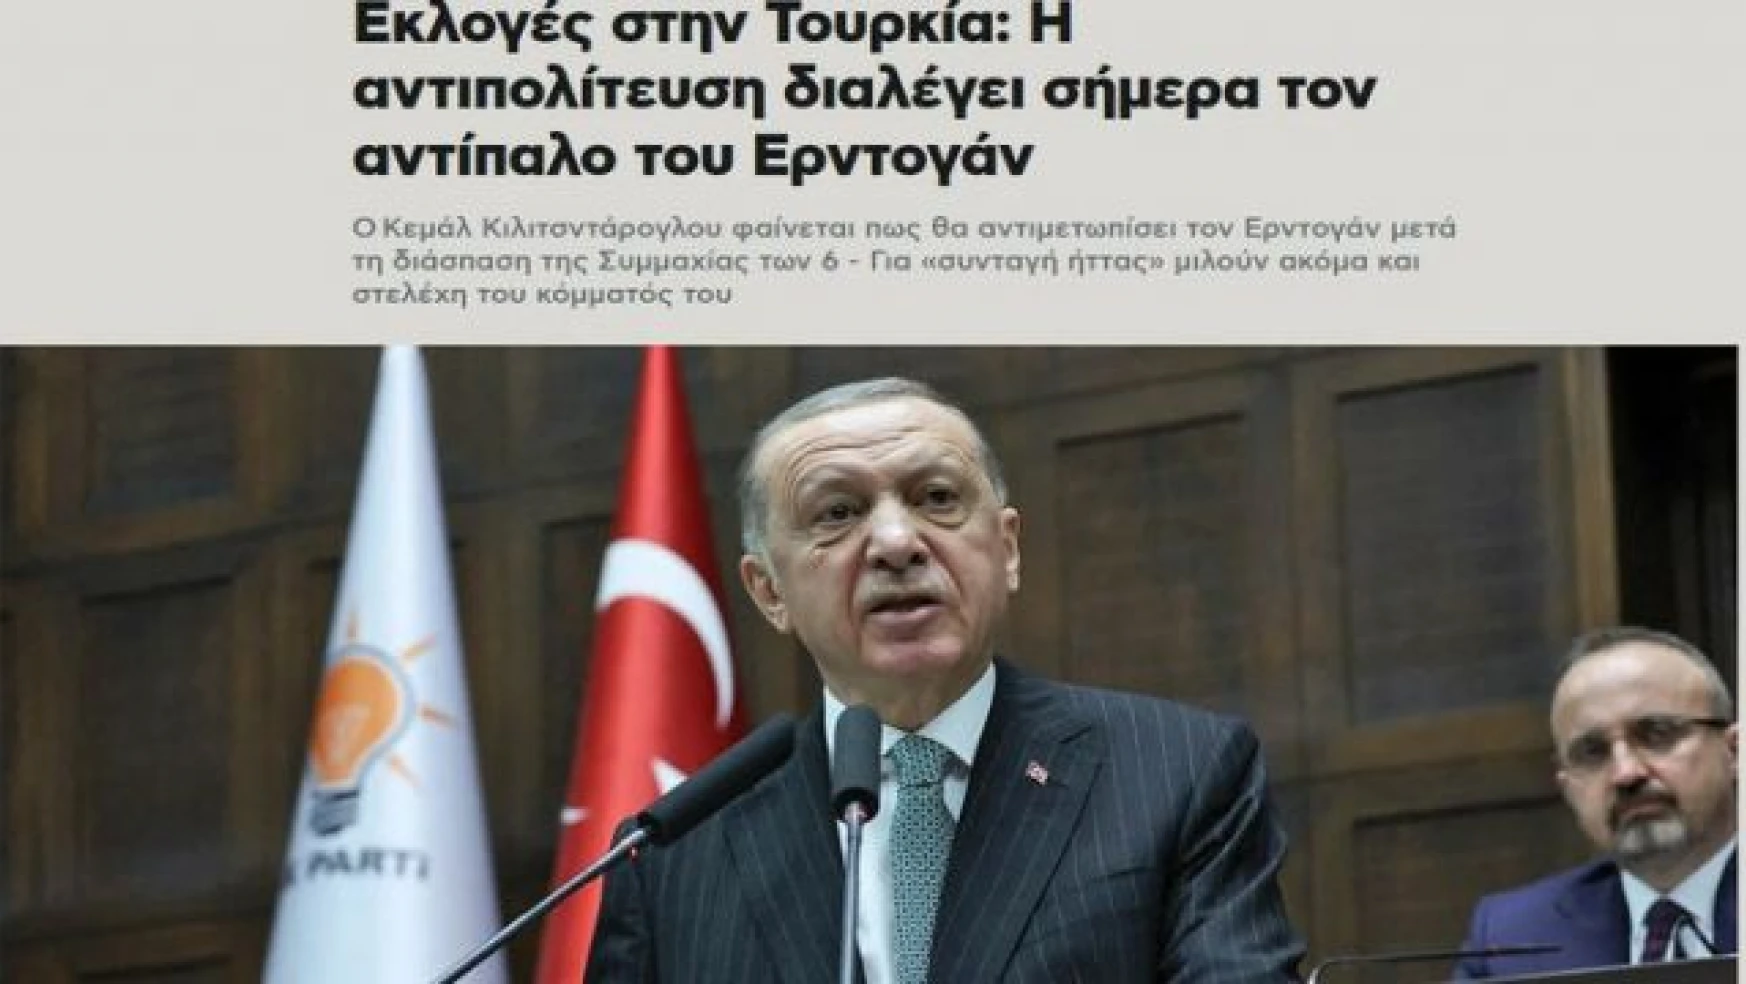 Yunanistan'ın gündemi Erdoğan! Yenilmez lider tanımı